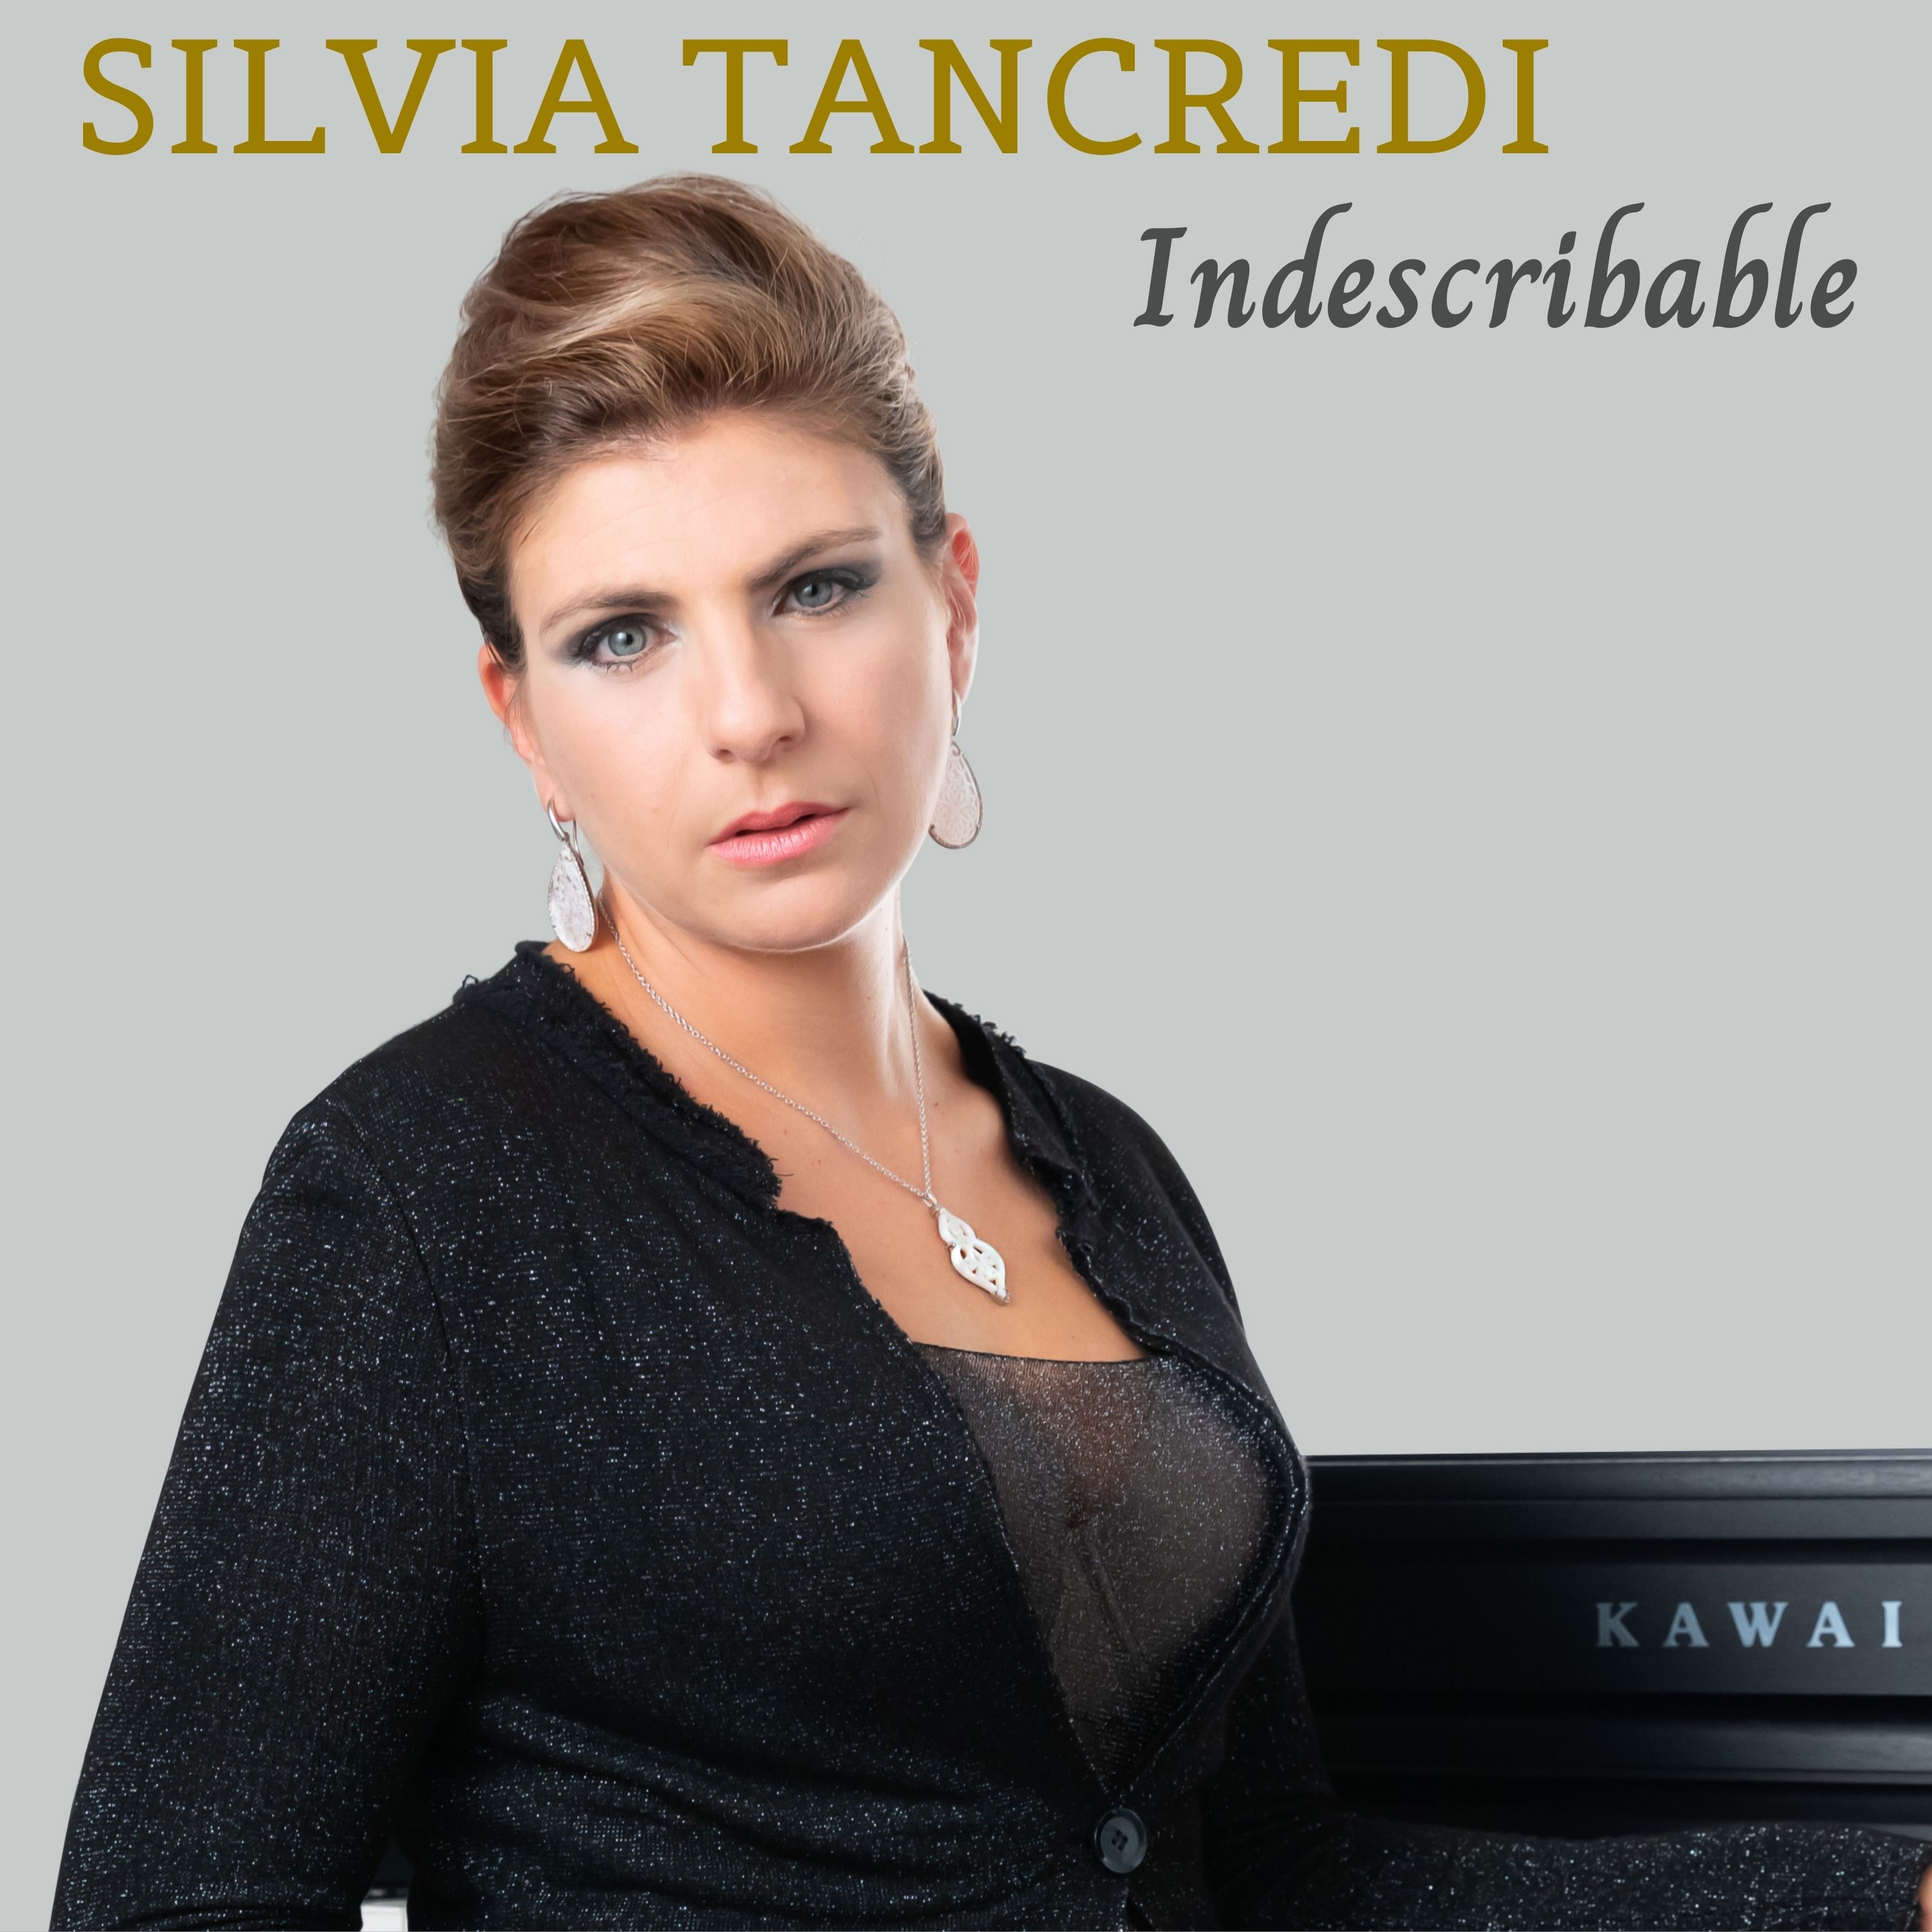 FUORI ADESSO: Indescribable il nuovo singolo di Silvia Tancredi